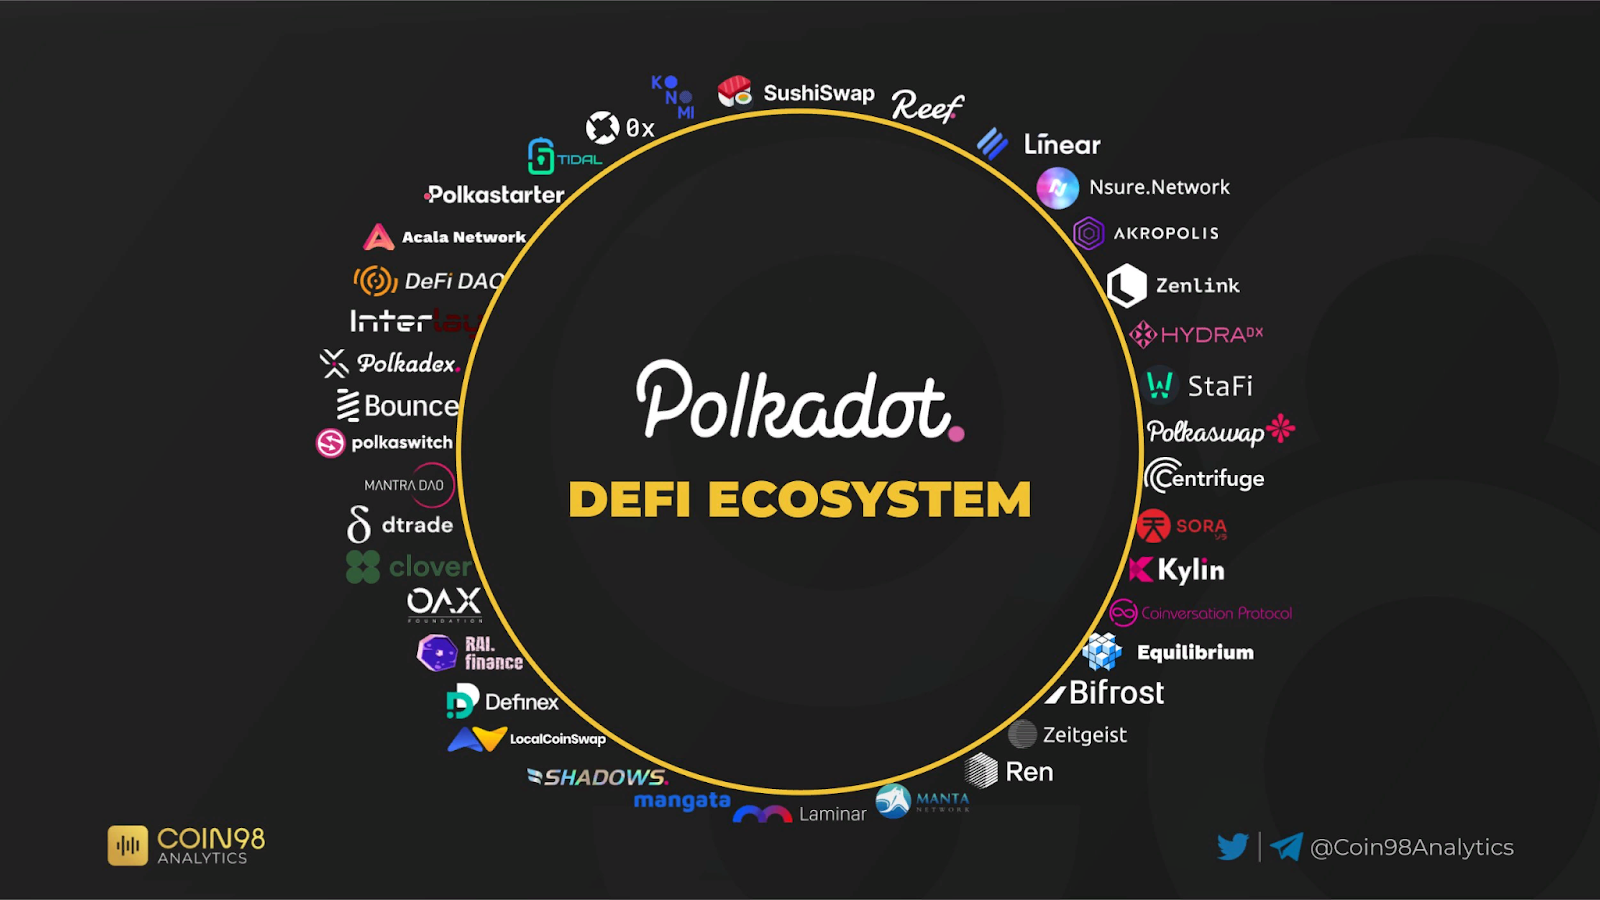 Polkadot DeFi ecosystem